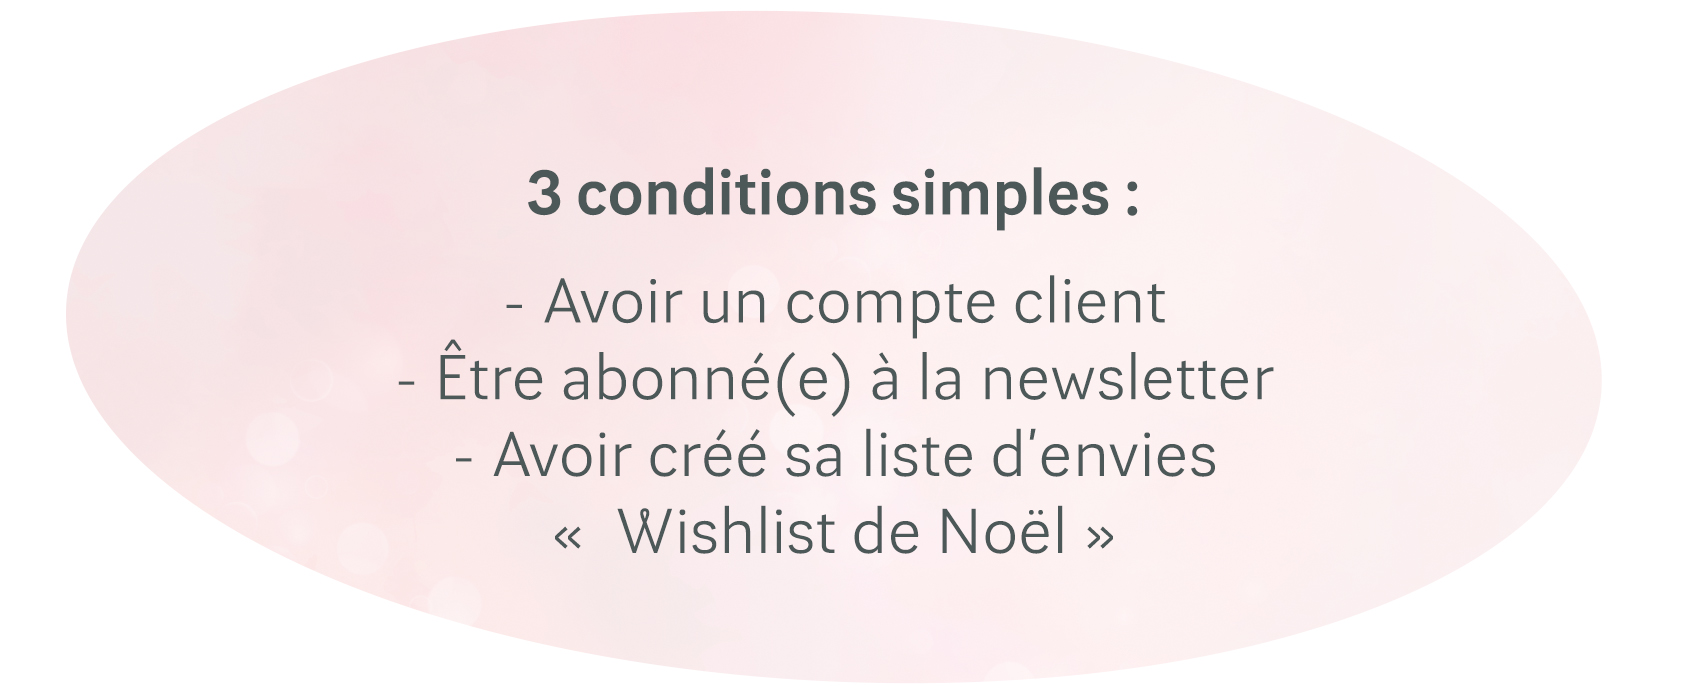 3 conditions simples :
- Avoir un compte client
- Être abonné(e) à la newsletter
- Avoir créé sa liste d’envies«  Wishlist de Noël »